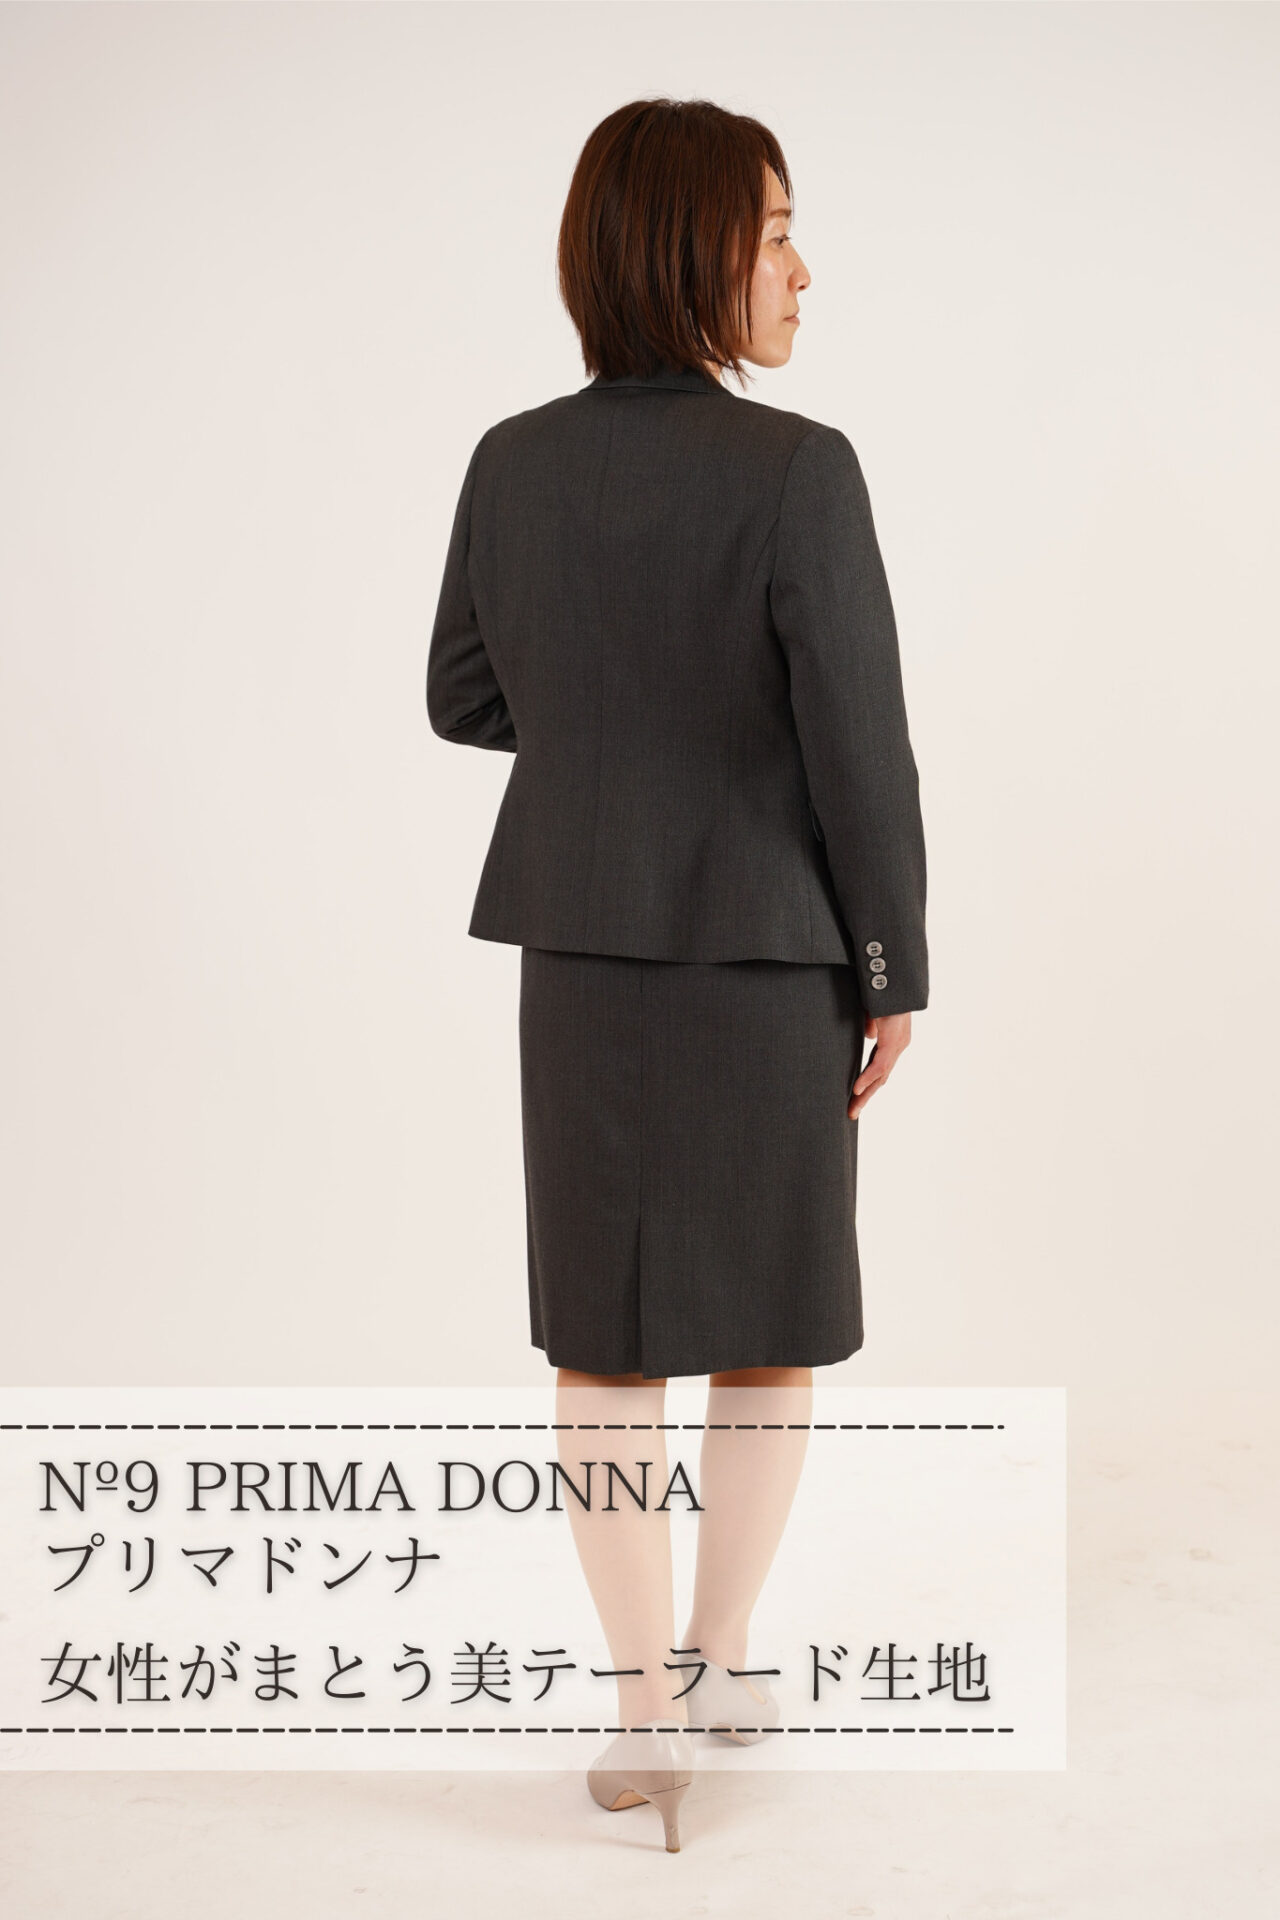 レディースオーダースーツ　プリマドンナ　婦人オーダーテーラー　ジャケットスカート Nº9 PRIMA DONNA